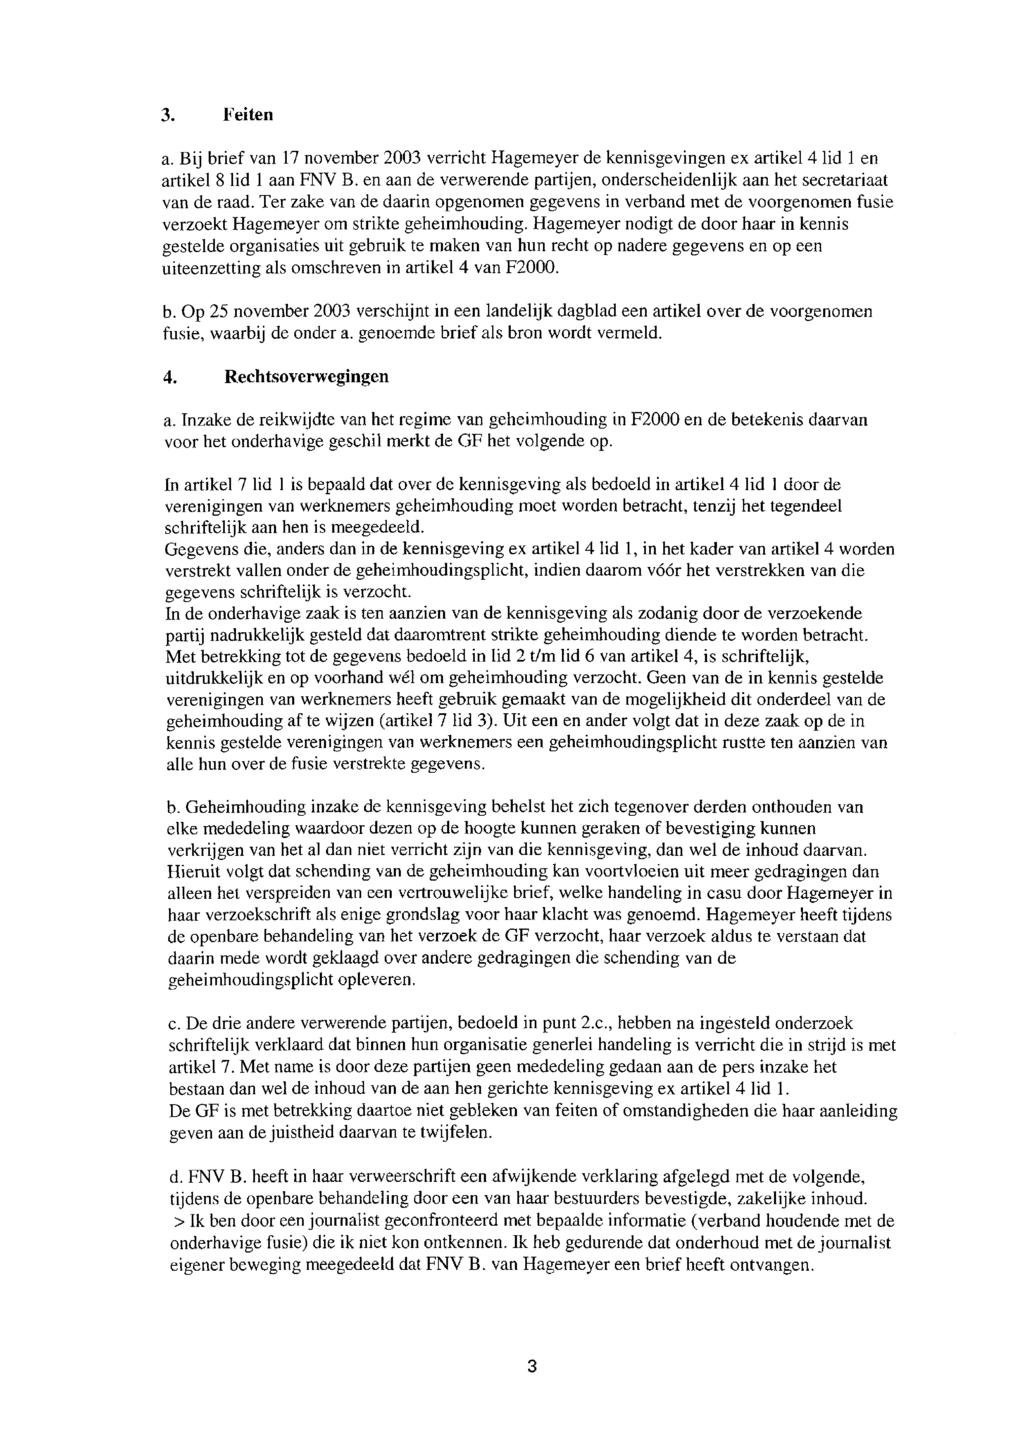 3. Feiten a. Bij brief van 17 november 2003 verricht Hagemeyer de kennisgevingen ex artikel 4 lid 1 en artikel 8 lid l aan FNV B.